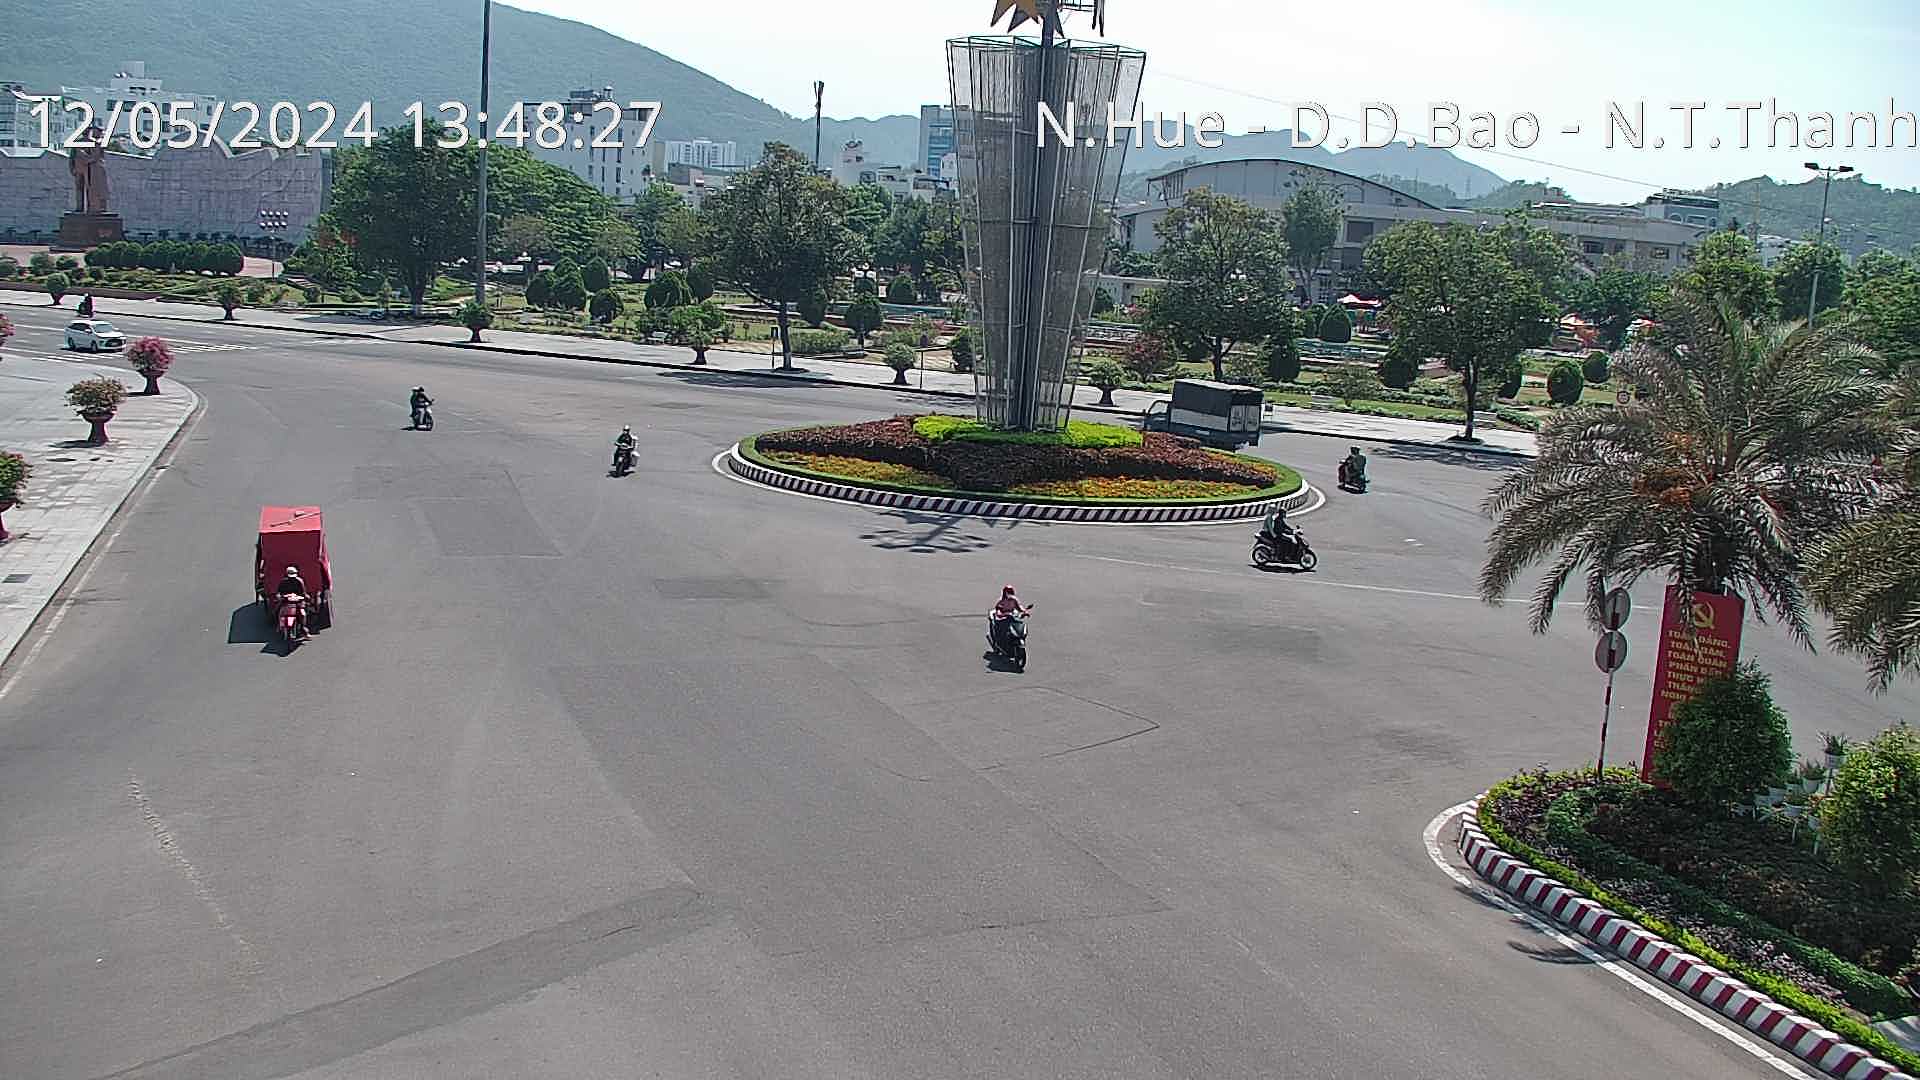 Xem camera giao thông Quy Nhơn Bình Định hình ảnh camera tuyến đường Ngã 5 Nguyễn Huệ - Đô Đốc Bảo - Nguyễn Tất Thành